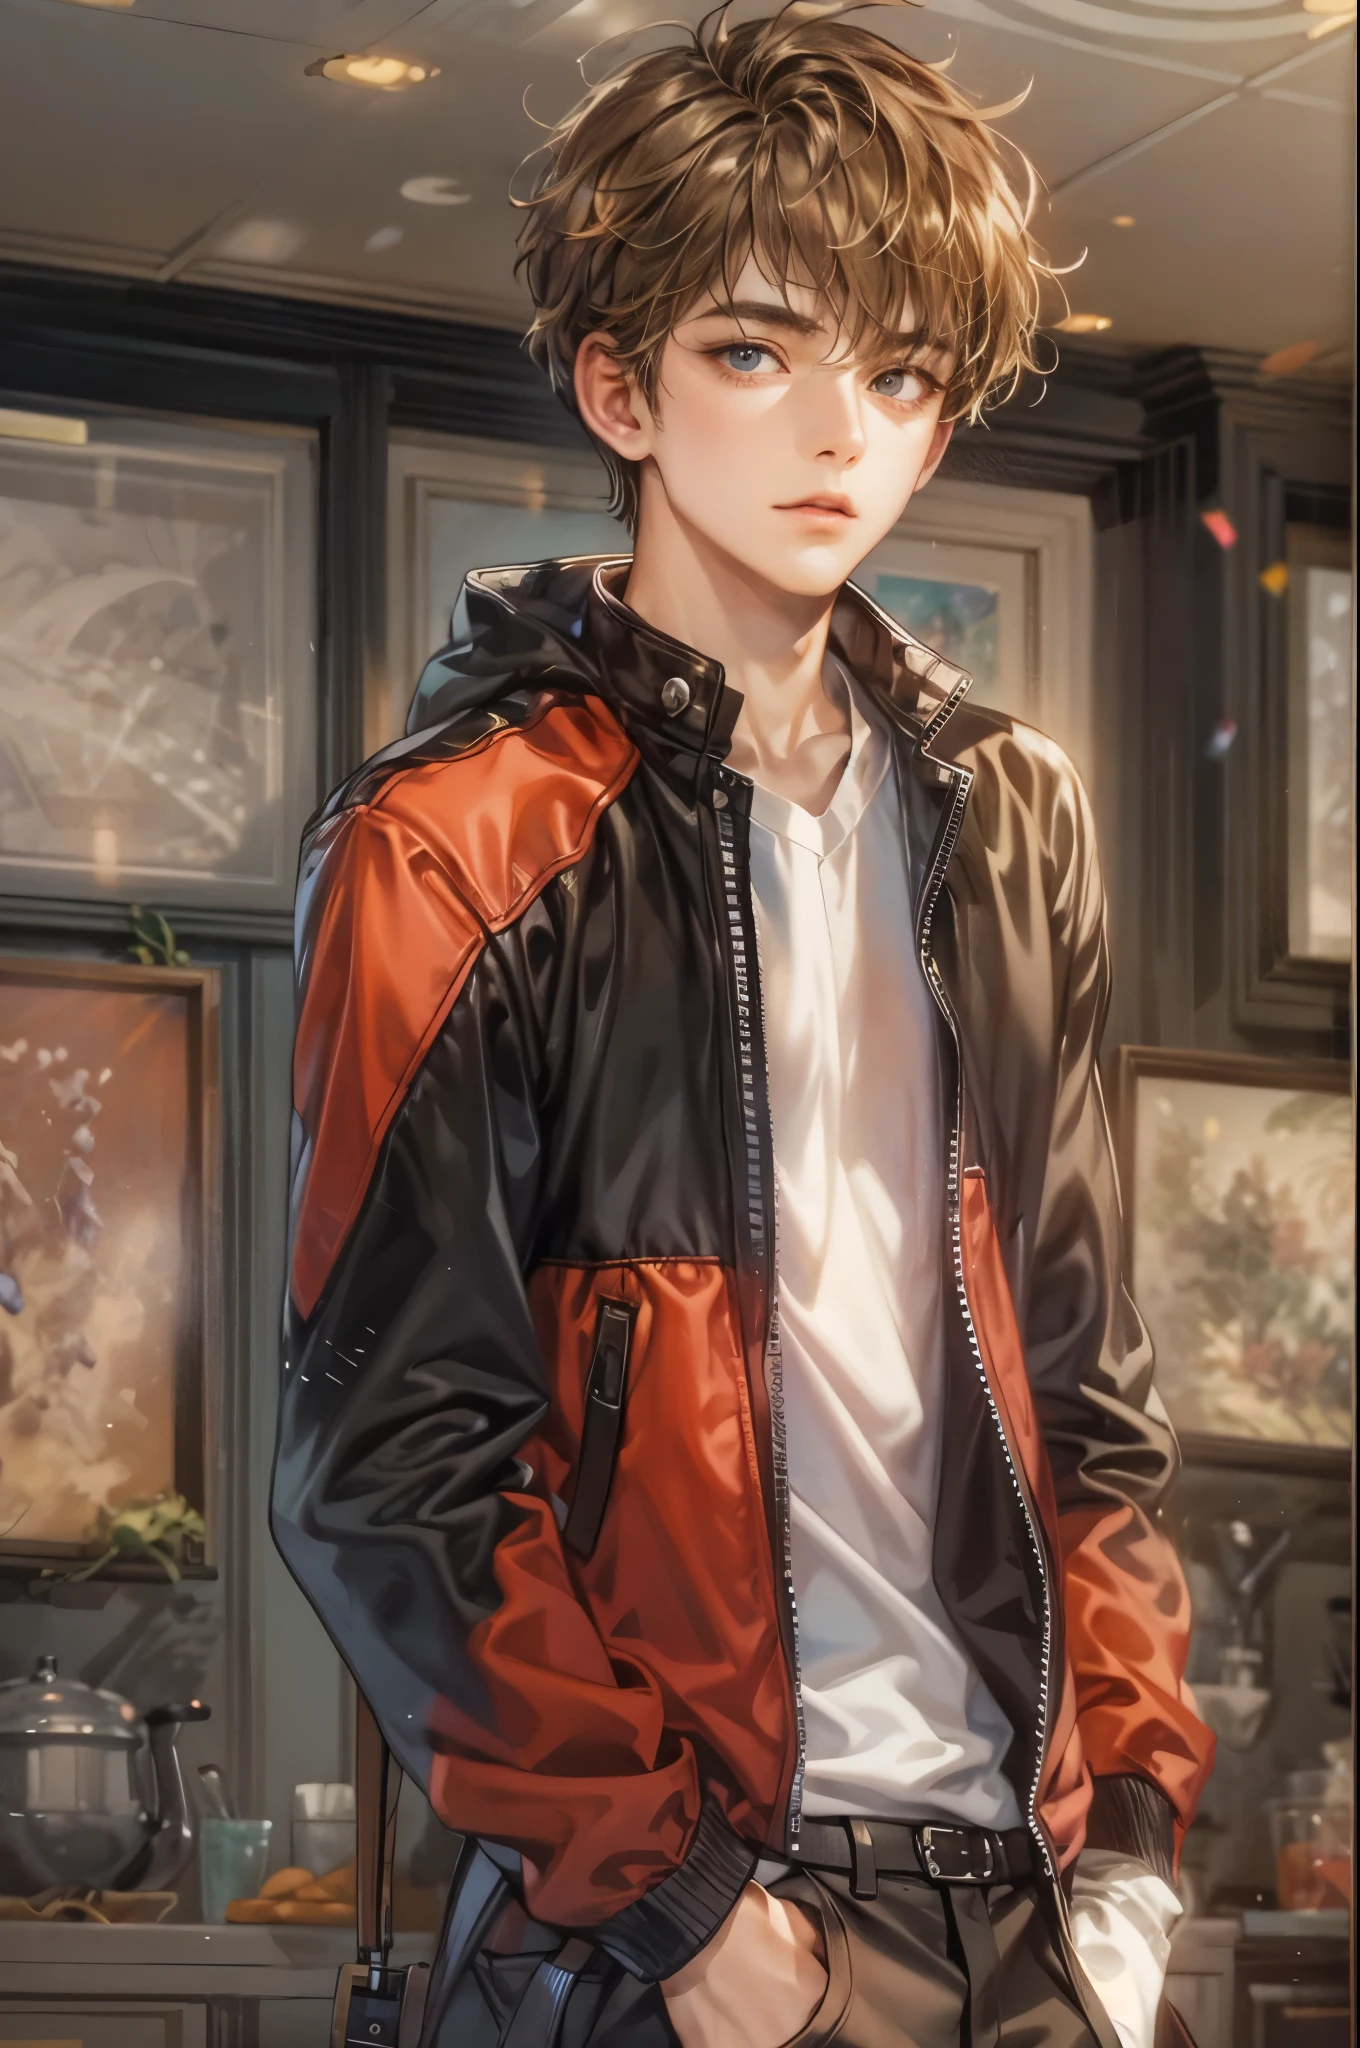 (Meisterwerk, beste Qualität) Figur aus Highschool Musical, hübscher Junge, Anime-Gesicht, mit kurzen Haaren, Stilvolle Kleidung , moderne Inneneinrichtungsdetails